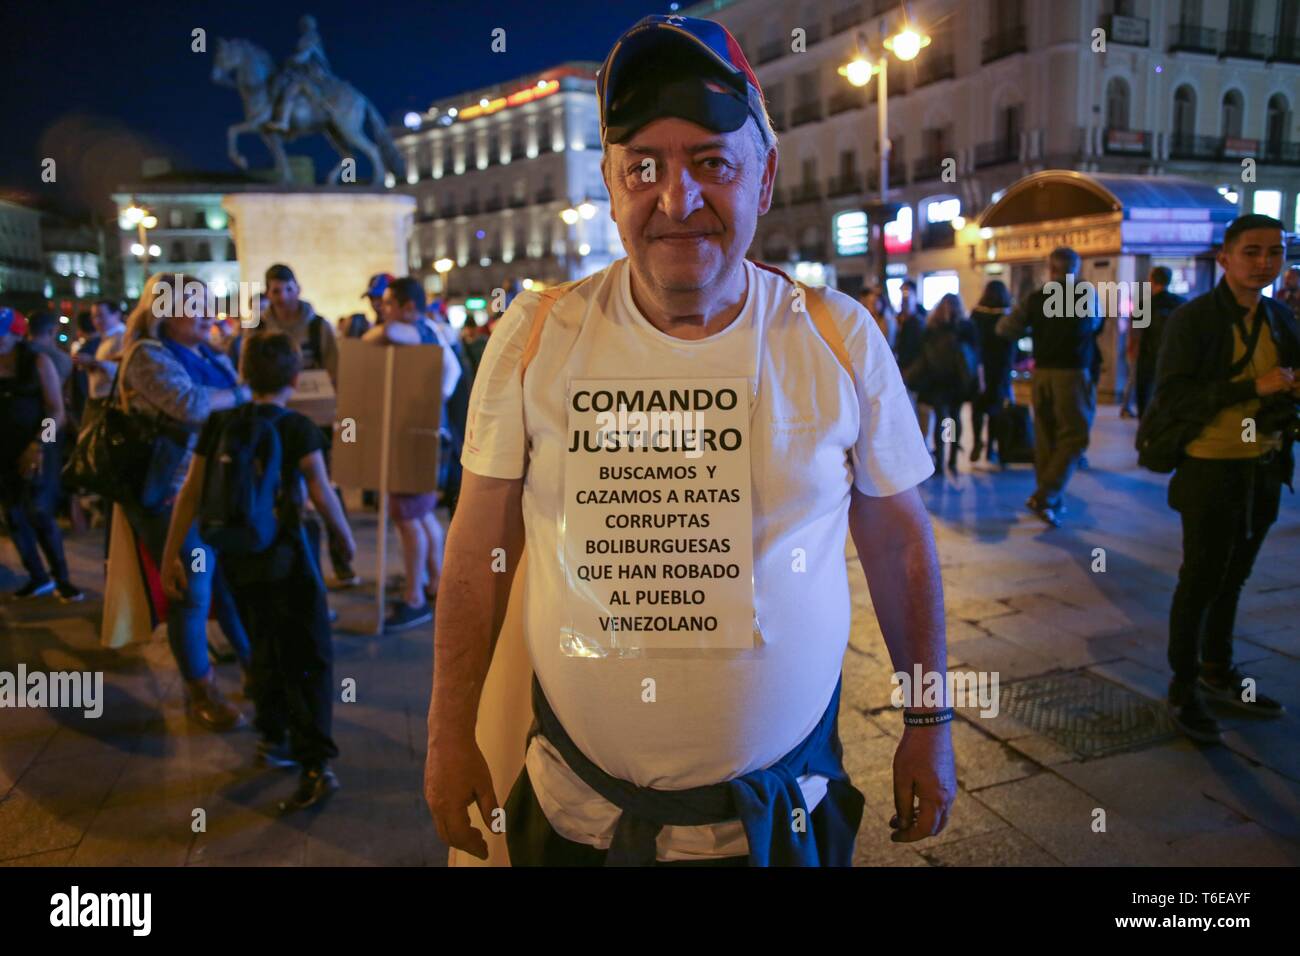 Manifestant vu avec une pancarte lors de la manifestation. Des centaines de personnes se sont réunies à la Puerta del Sol, Madrid à une manifestation appelée opération liberté, pour la liberté du Venezuela contre la dictature. Banque D'Images